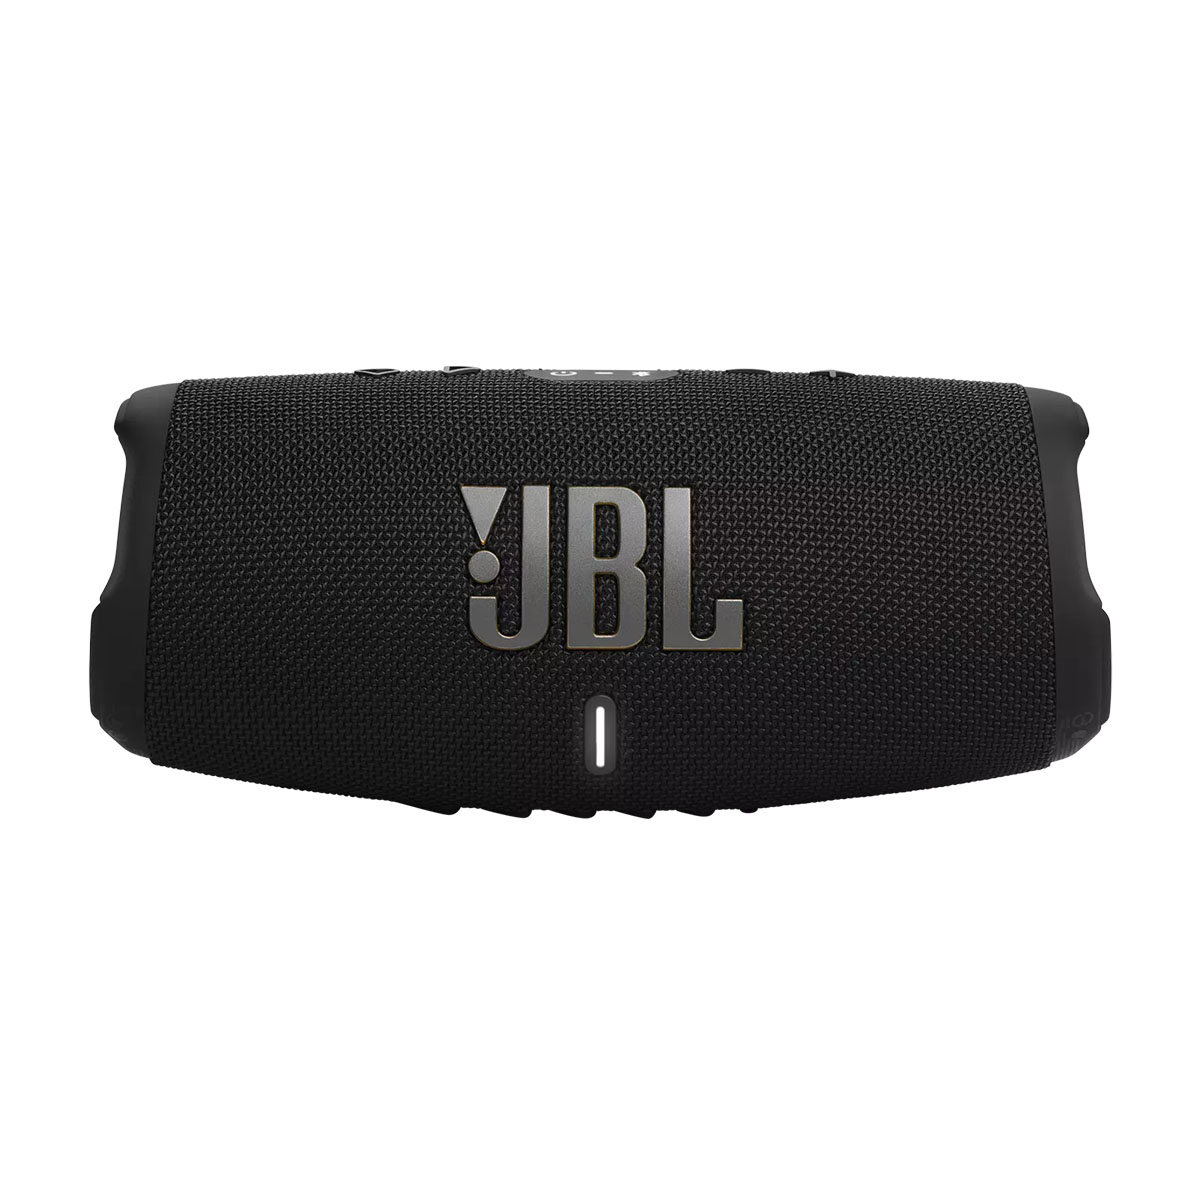 JBL Charge 5 WiFi Black